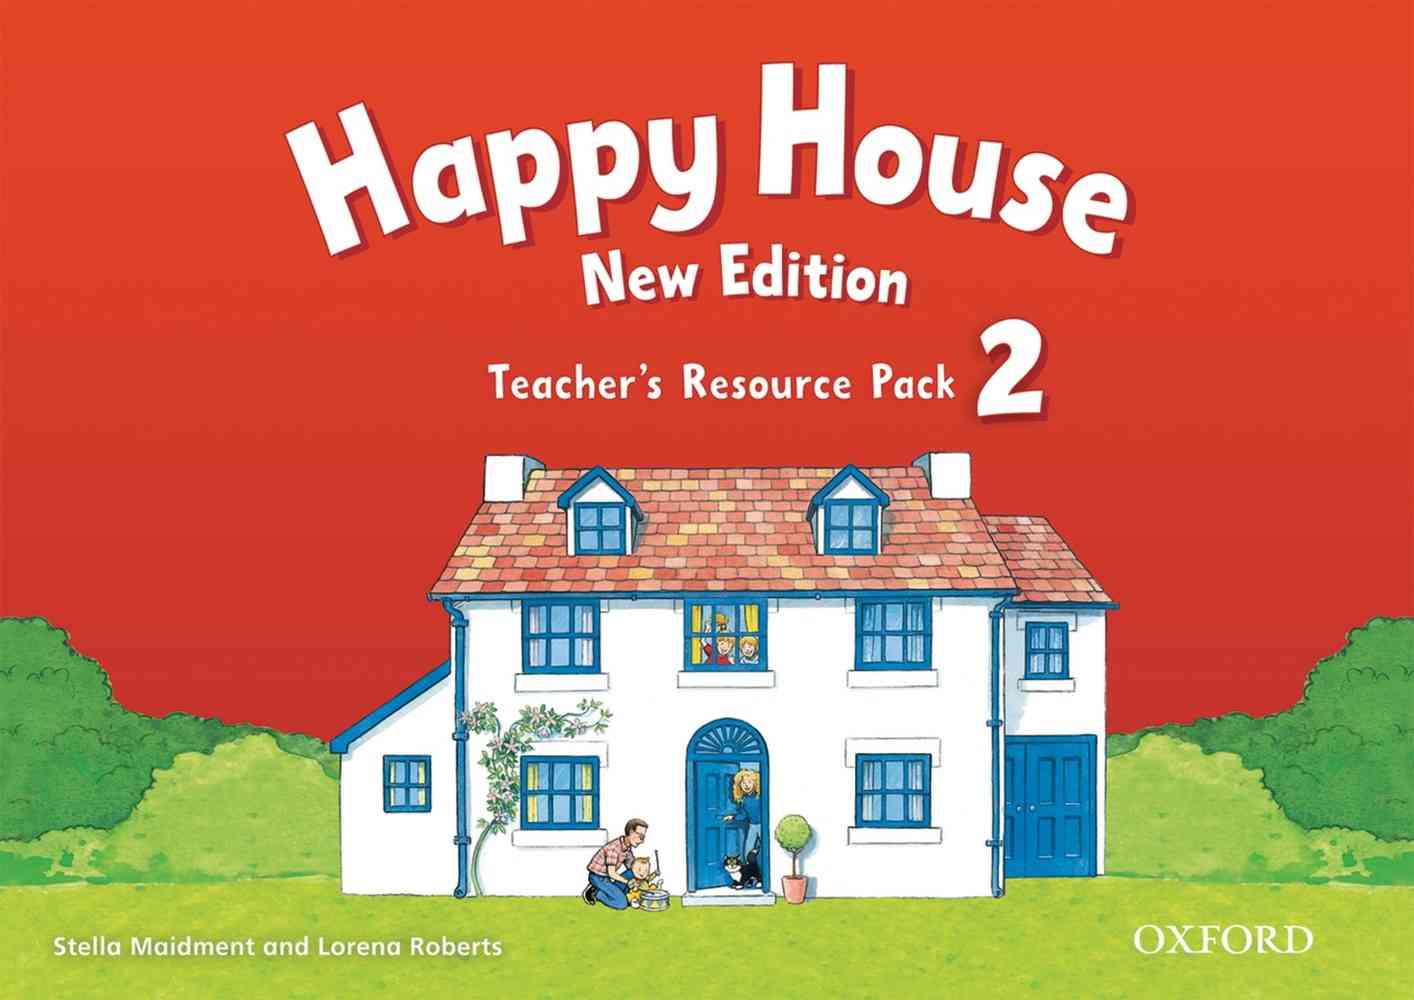 Happy House 2 Teacher’s Resource Pack niculescu.ro imagine noua